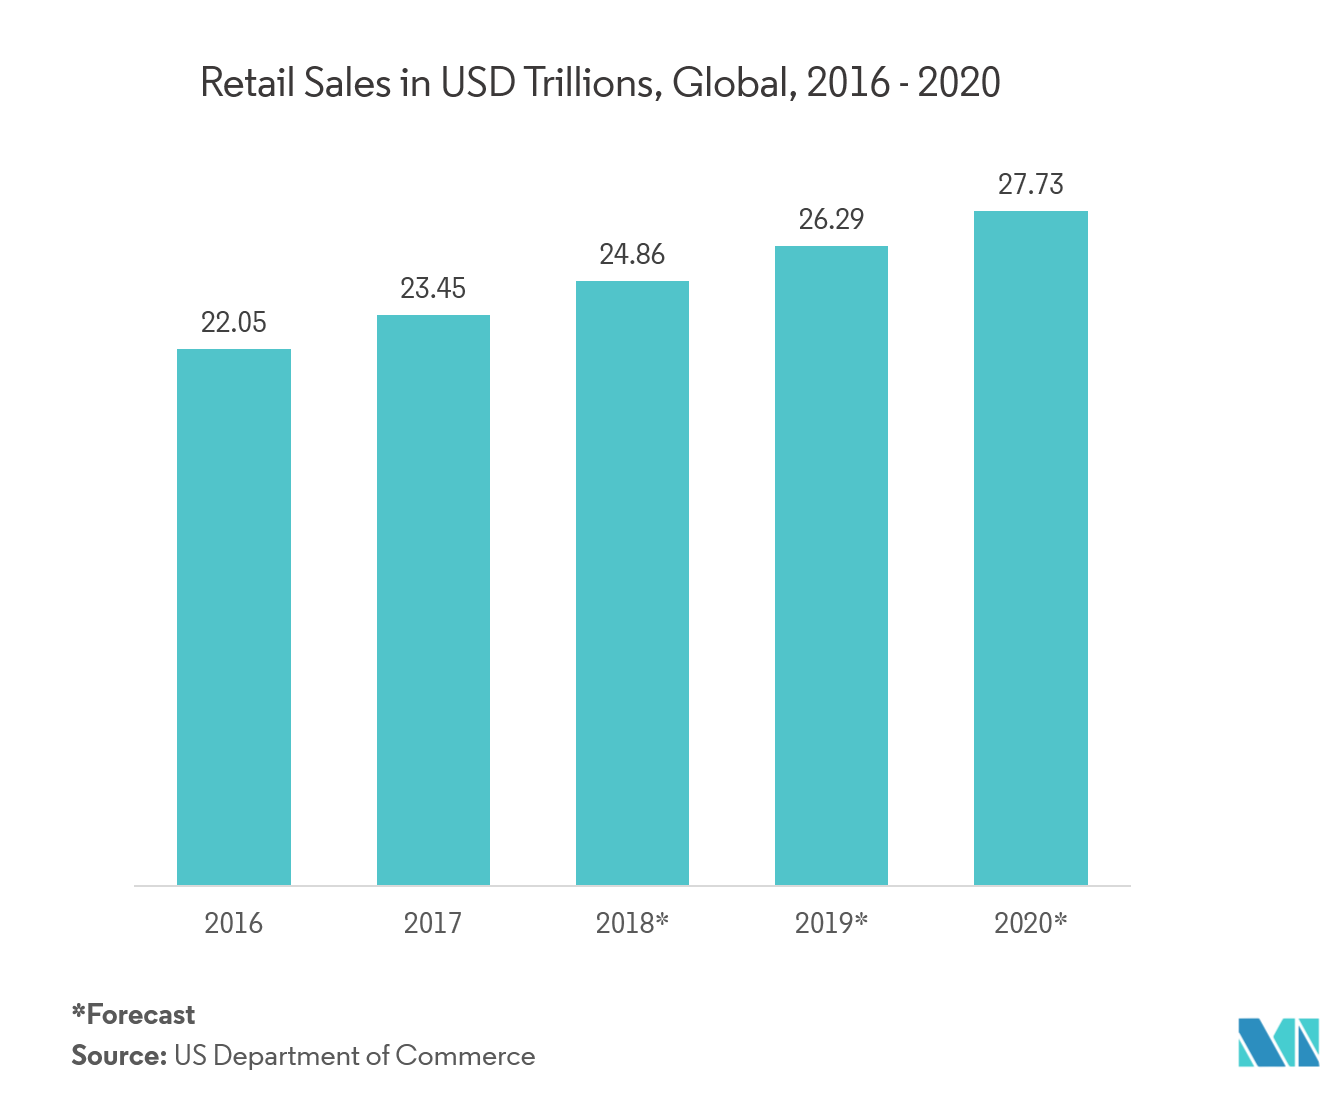 Vendas no varejo em trilhões de dólares, globais, 2016 - 2020